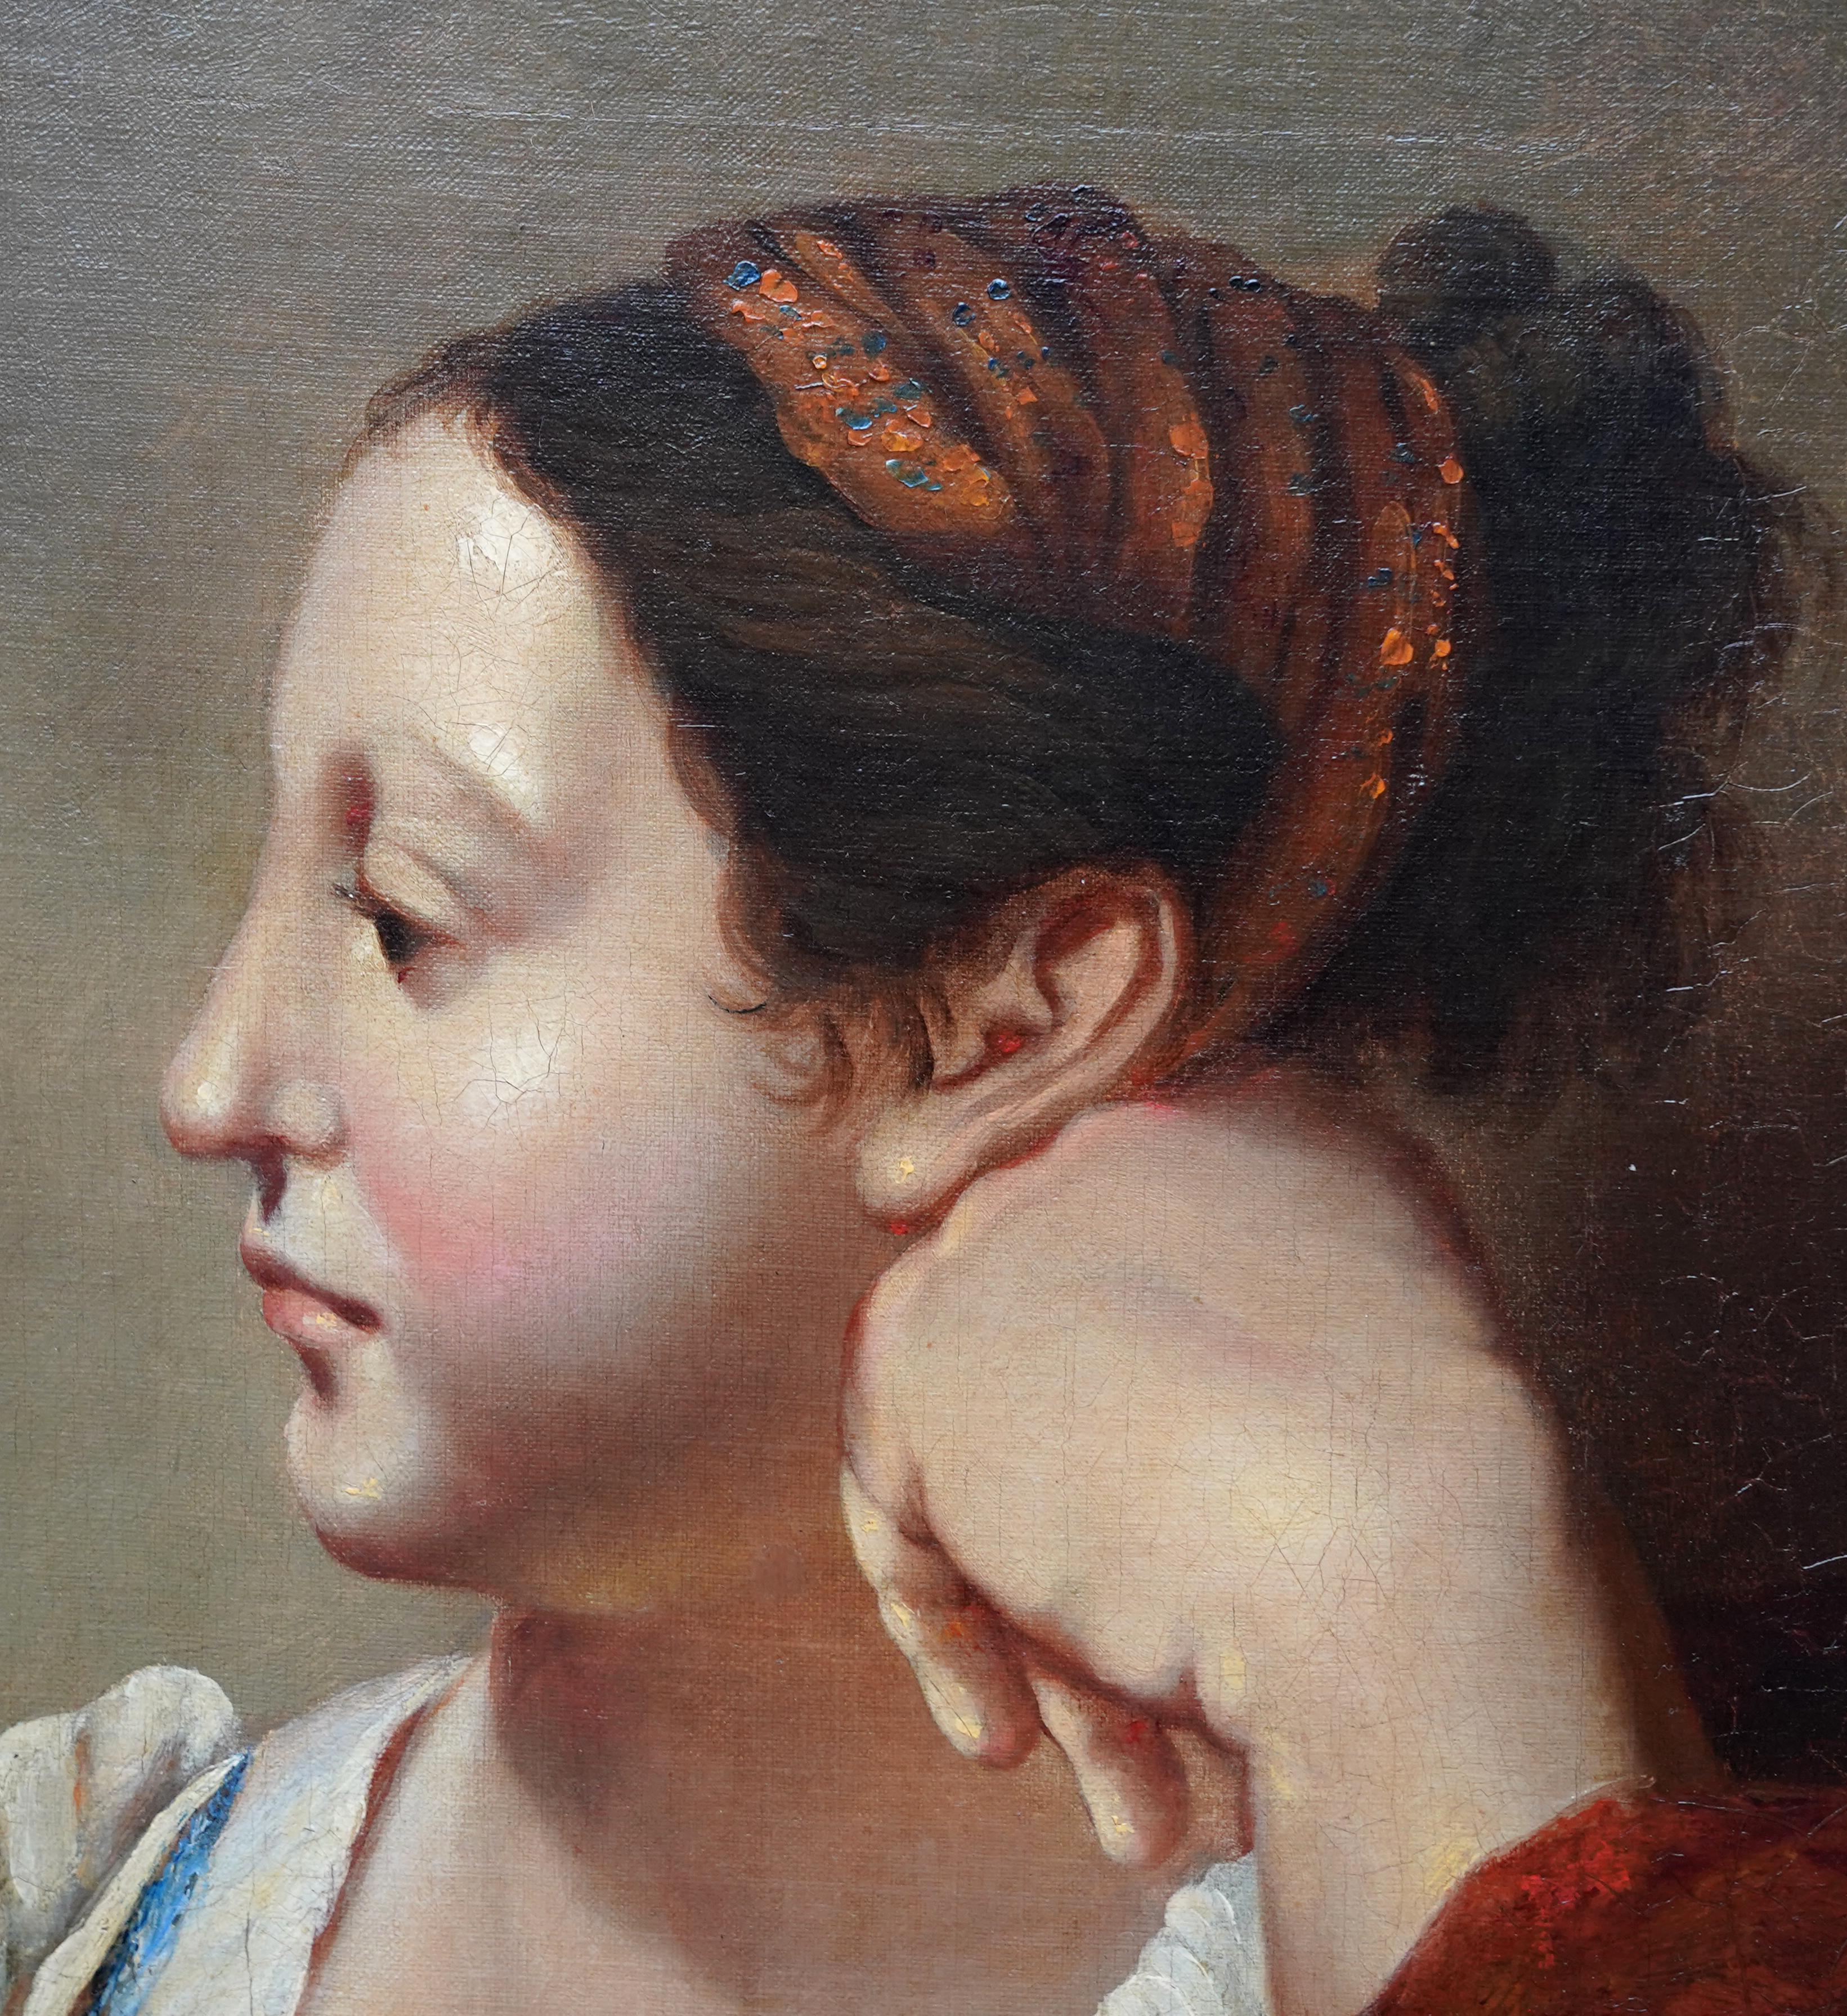 Dieses schöne altmeisterliche französische Porträt-Ölgemälde wird dem Umkreis von Jean Auguste Dominique Ingres zugeschrieben. Es wurde um 1810 gemalt und zeigt das Kopf-Schulter-Profil einer schönen Frau, die ihren Kopf auf eine Hand stützt. Die